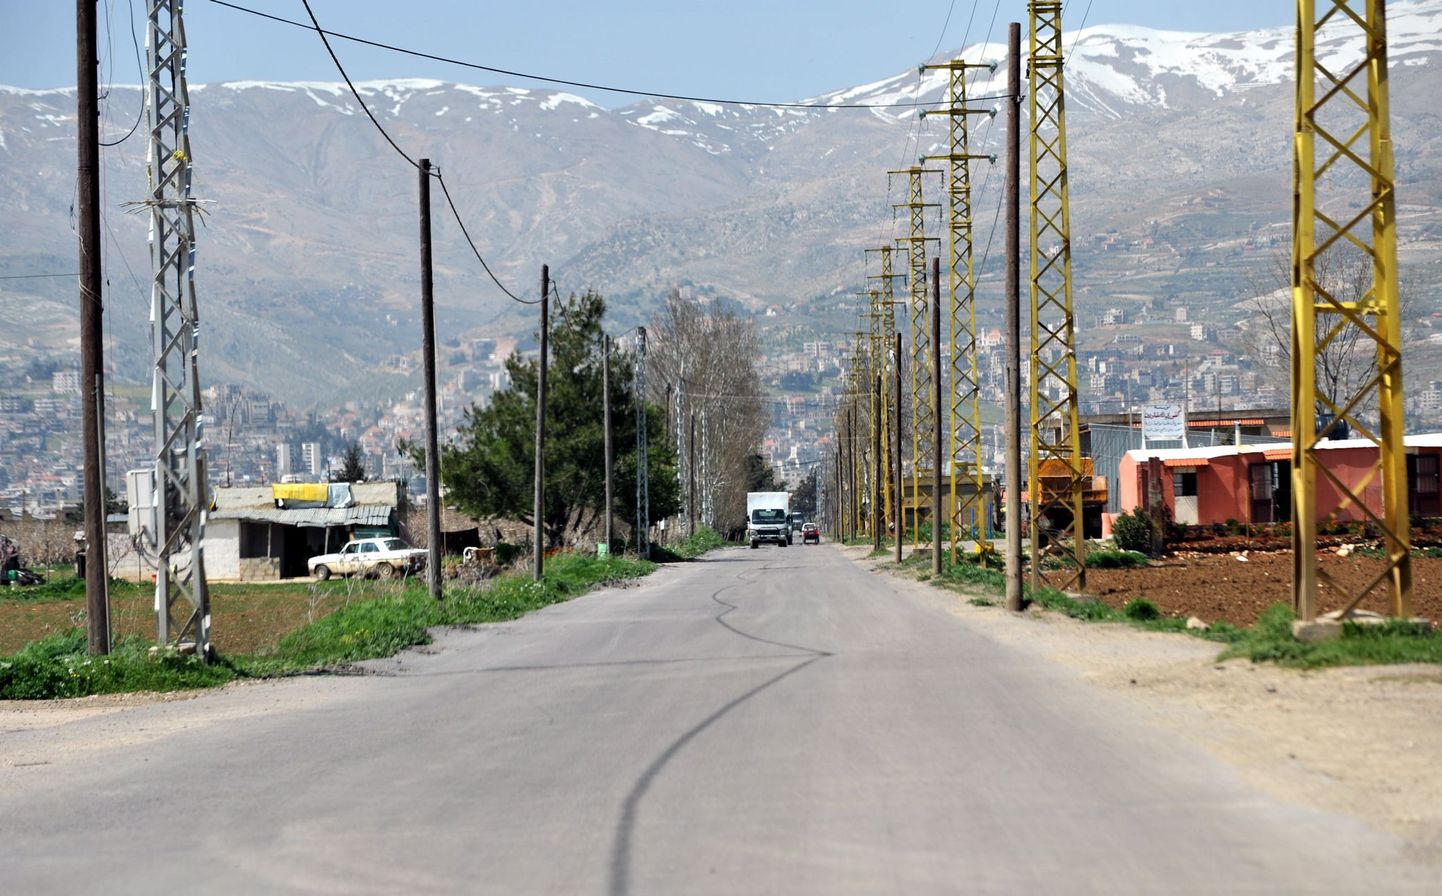 Дорога, ведущая в город Зале в долине Бекаа.